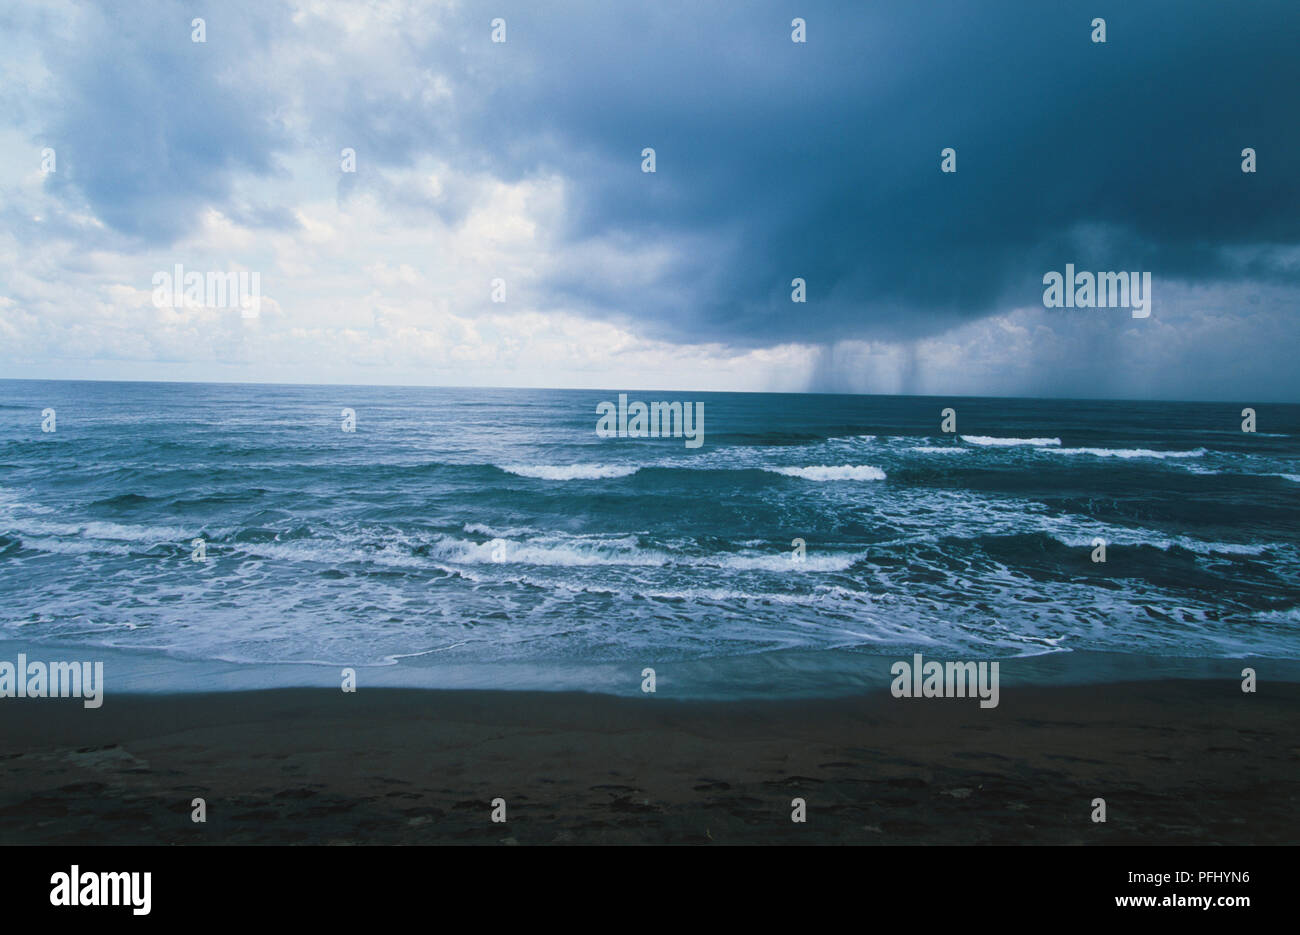 En Centroamérica, Costa Rica, El Caribe, el Parque Nacional Tortuguero, olas rompiendo en la playa desierta en el mar frente a la aldea durante condiciones climáticas tormentosas y oscuras nubes de lluvia encima en día nublado en el parque nacional Foto de stock